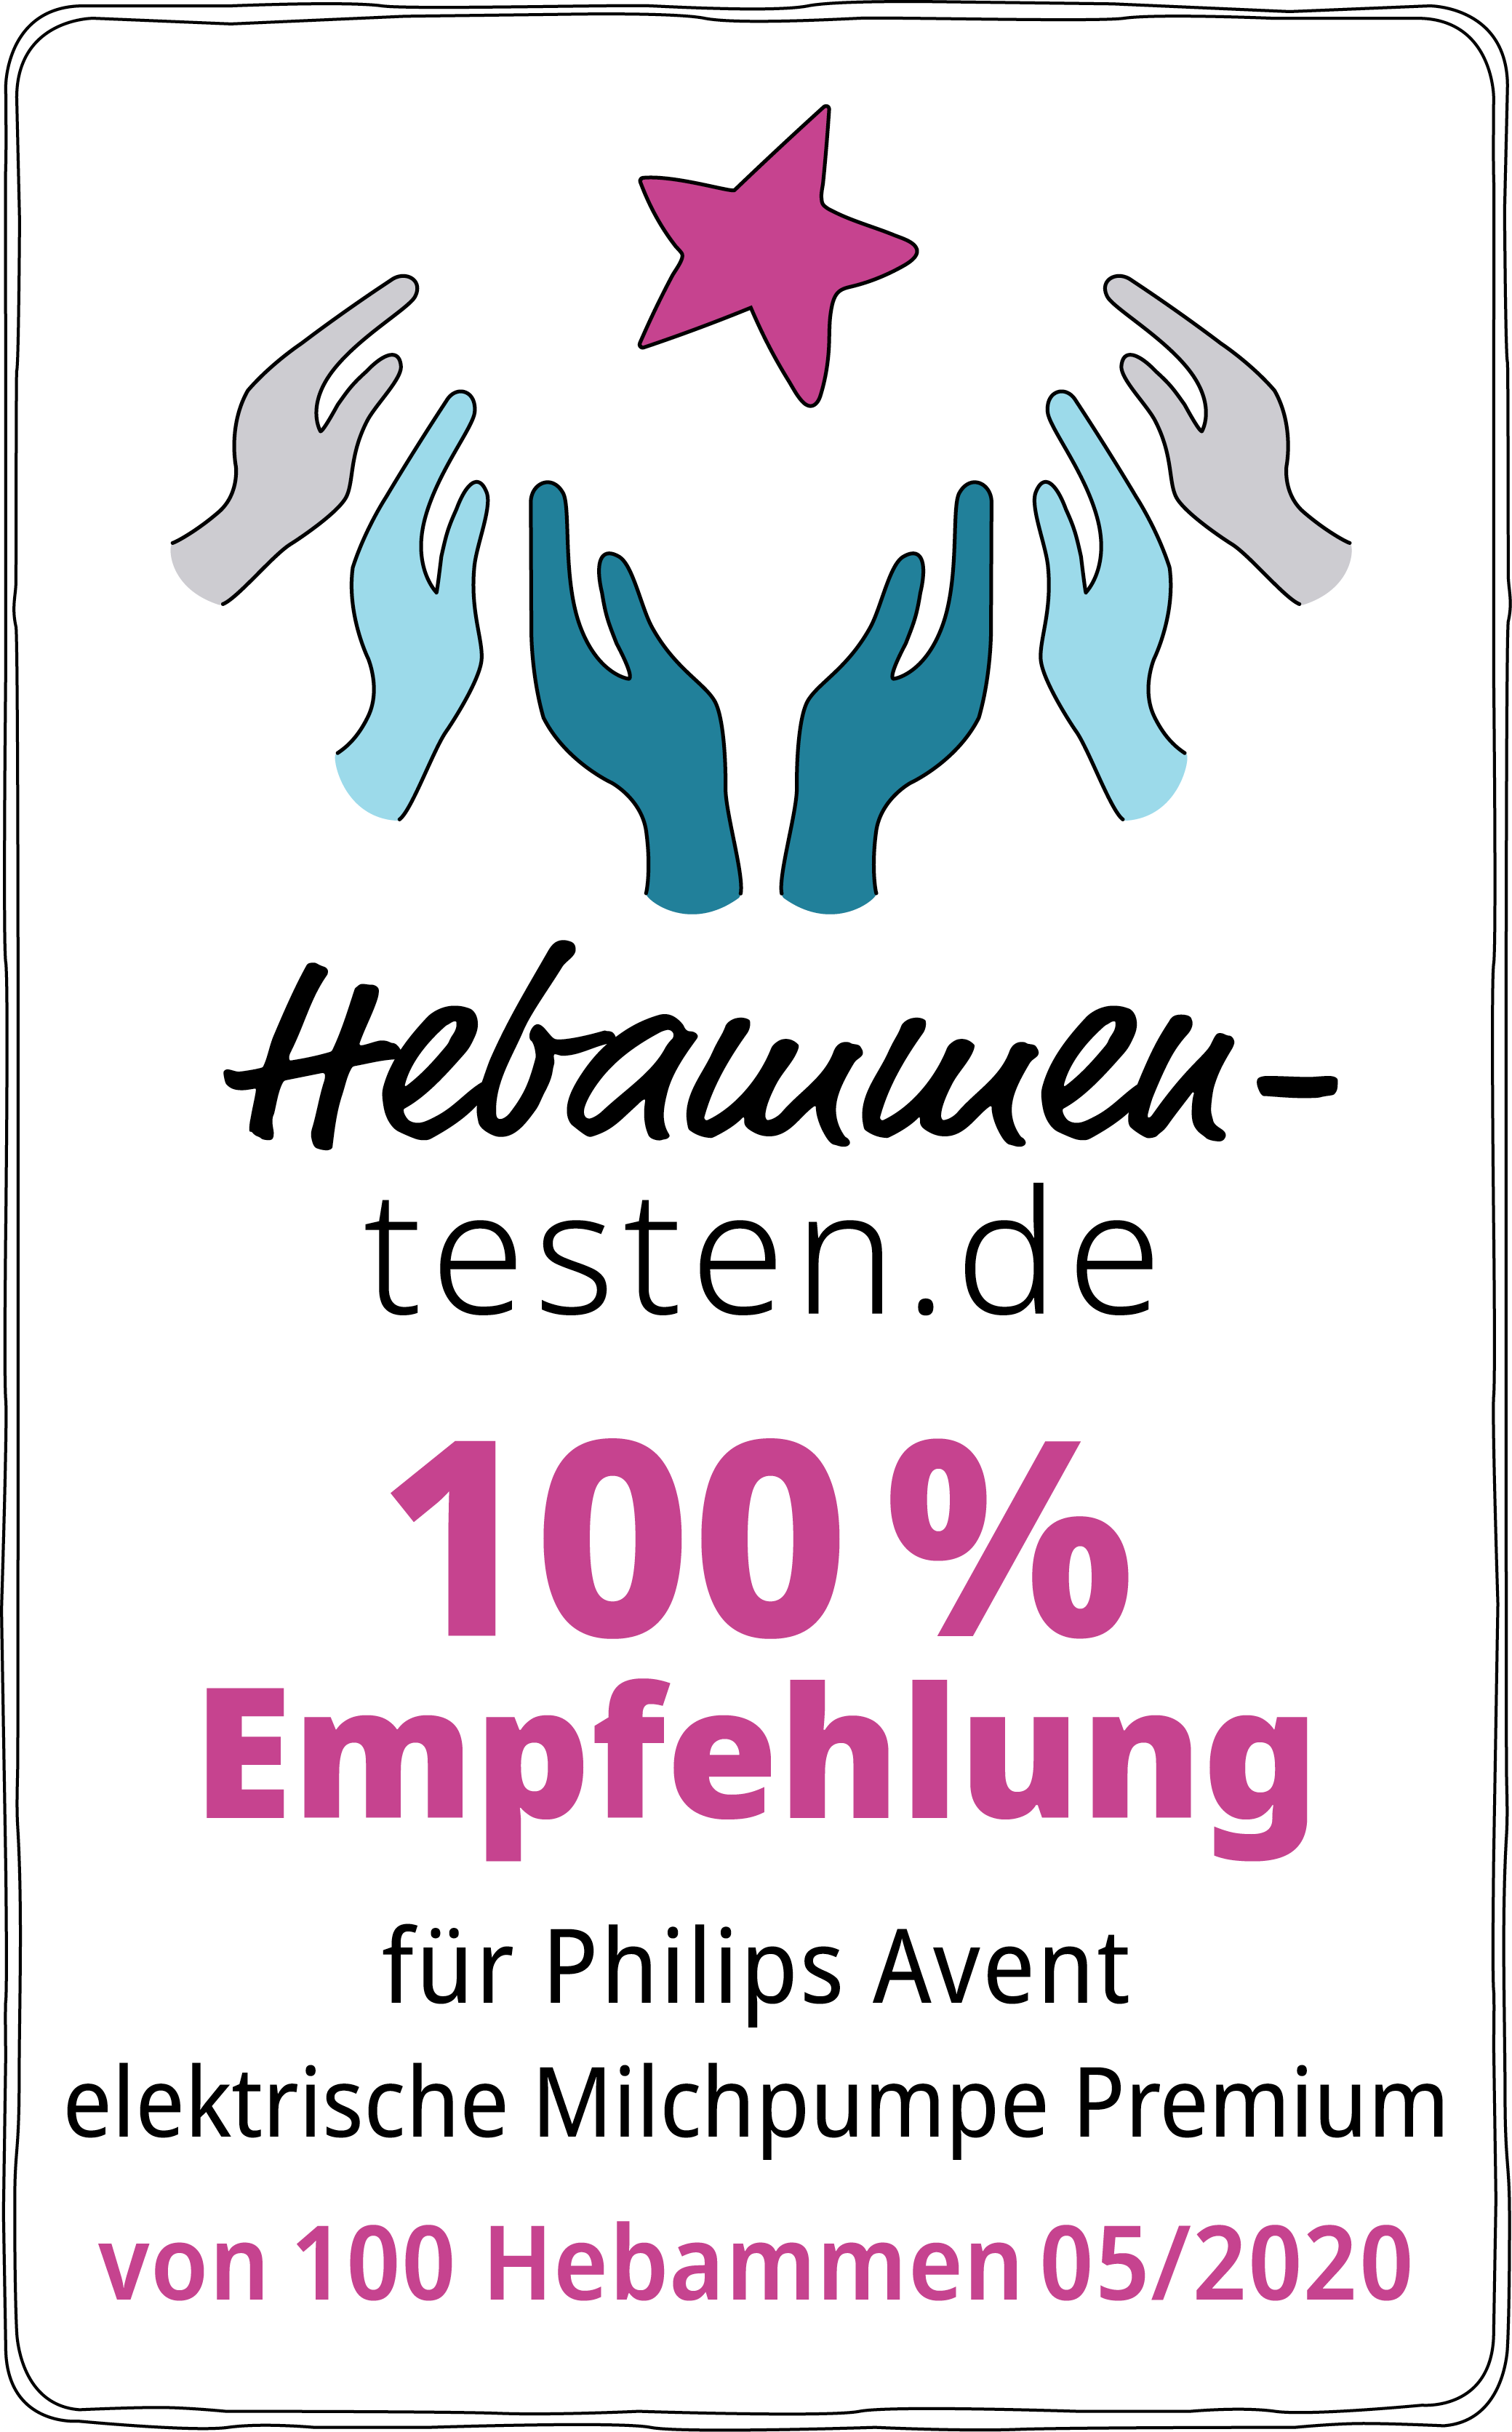 Hebammen-testen.de Siegel für Philips Avent elektrische Milchpumpe Premium 100 % Empfehlung von 100 Hebammen im Mai 2020 getestet.